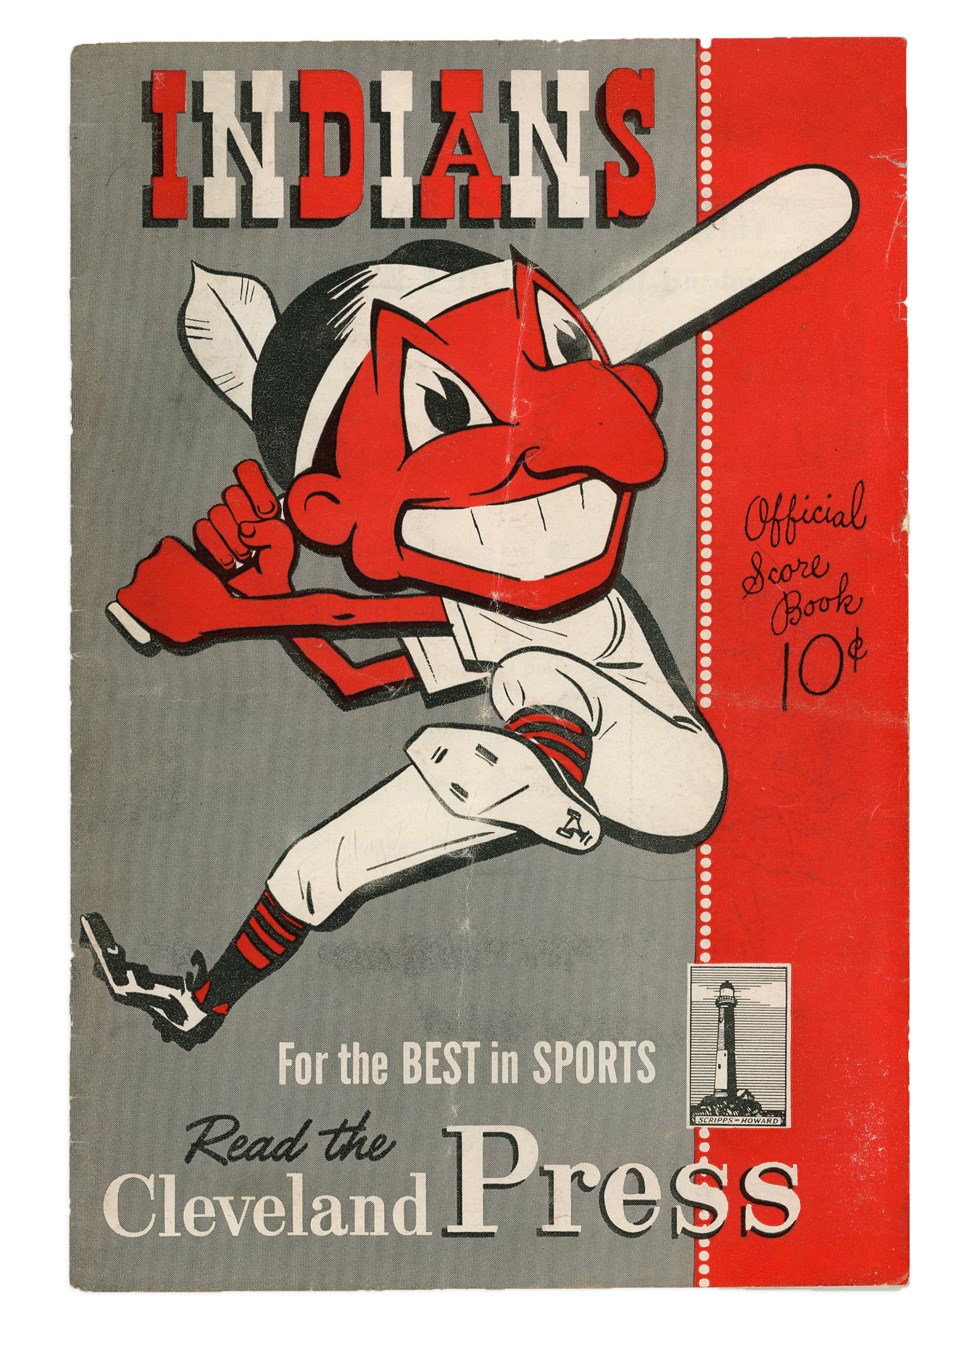 - Satchel Paige 1st Major League Game Program - 1948 Cleveland Indians vs. St. Louis Browns